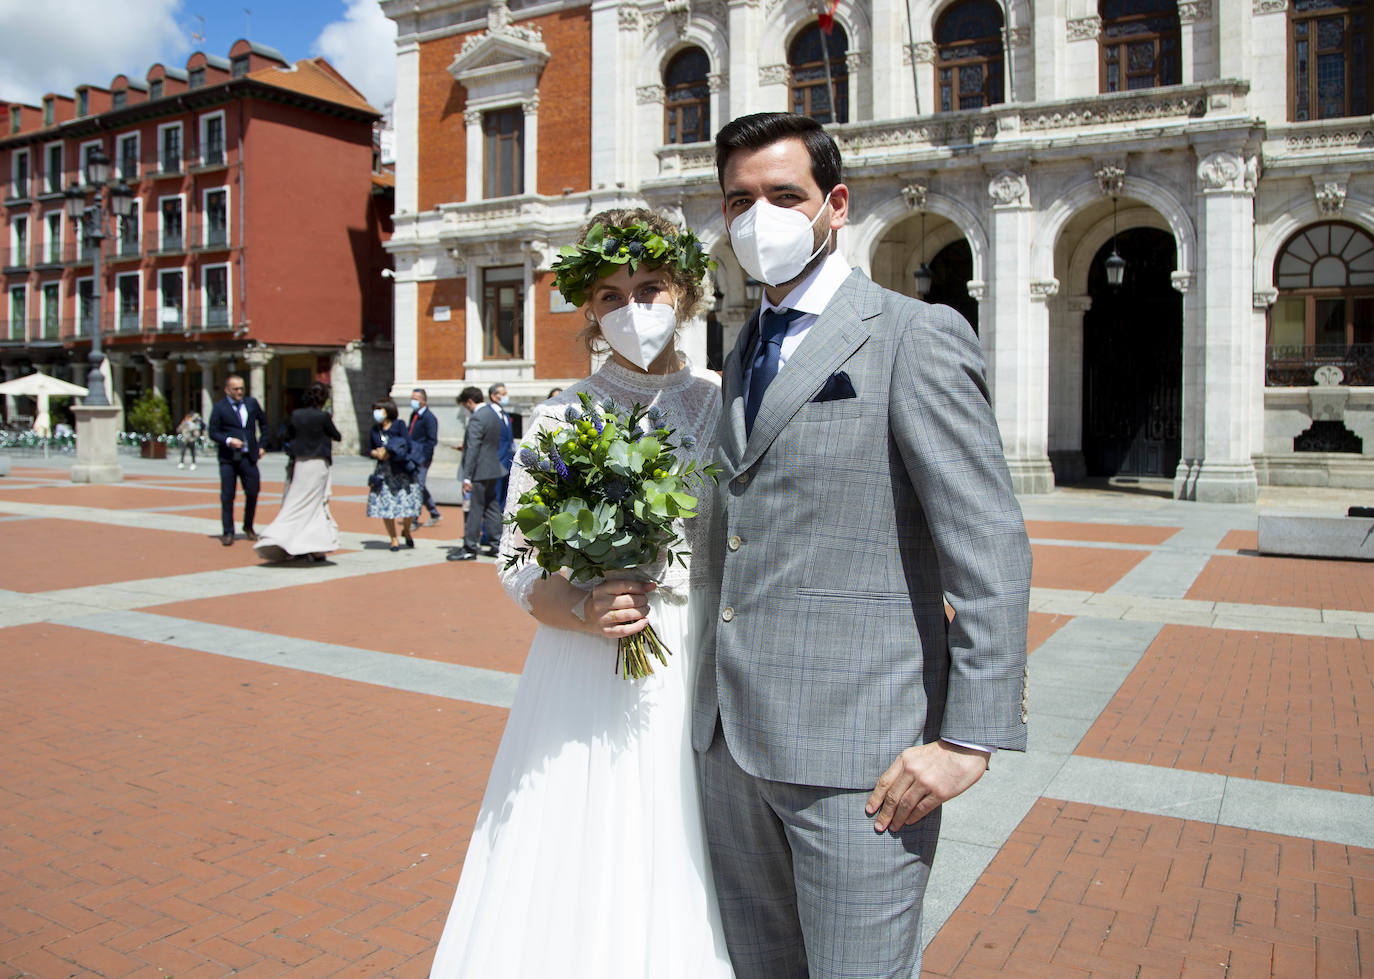 David y Rowena se casan en Valladolid: límite de invitados, mascarillas en la ceremonia